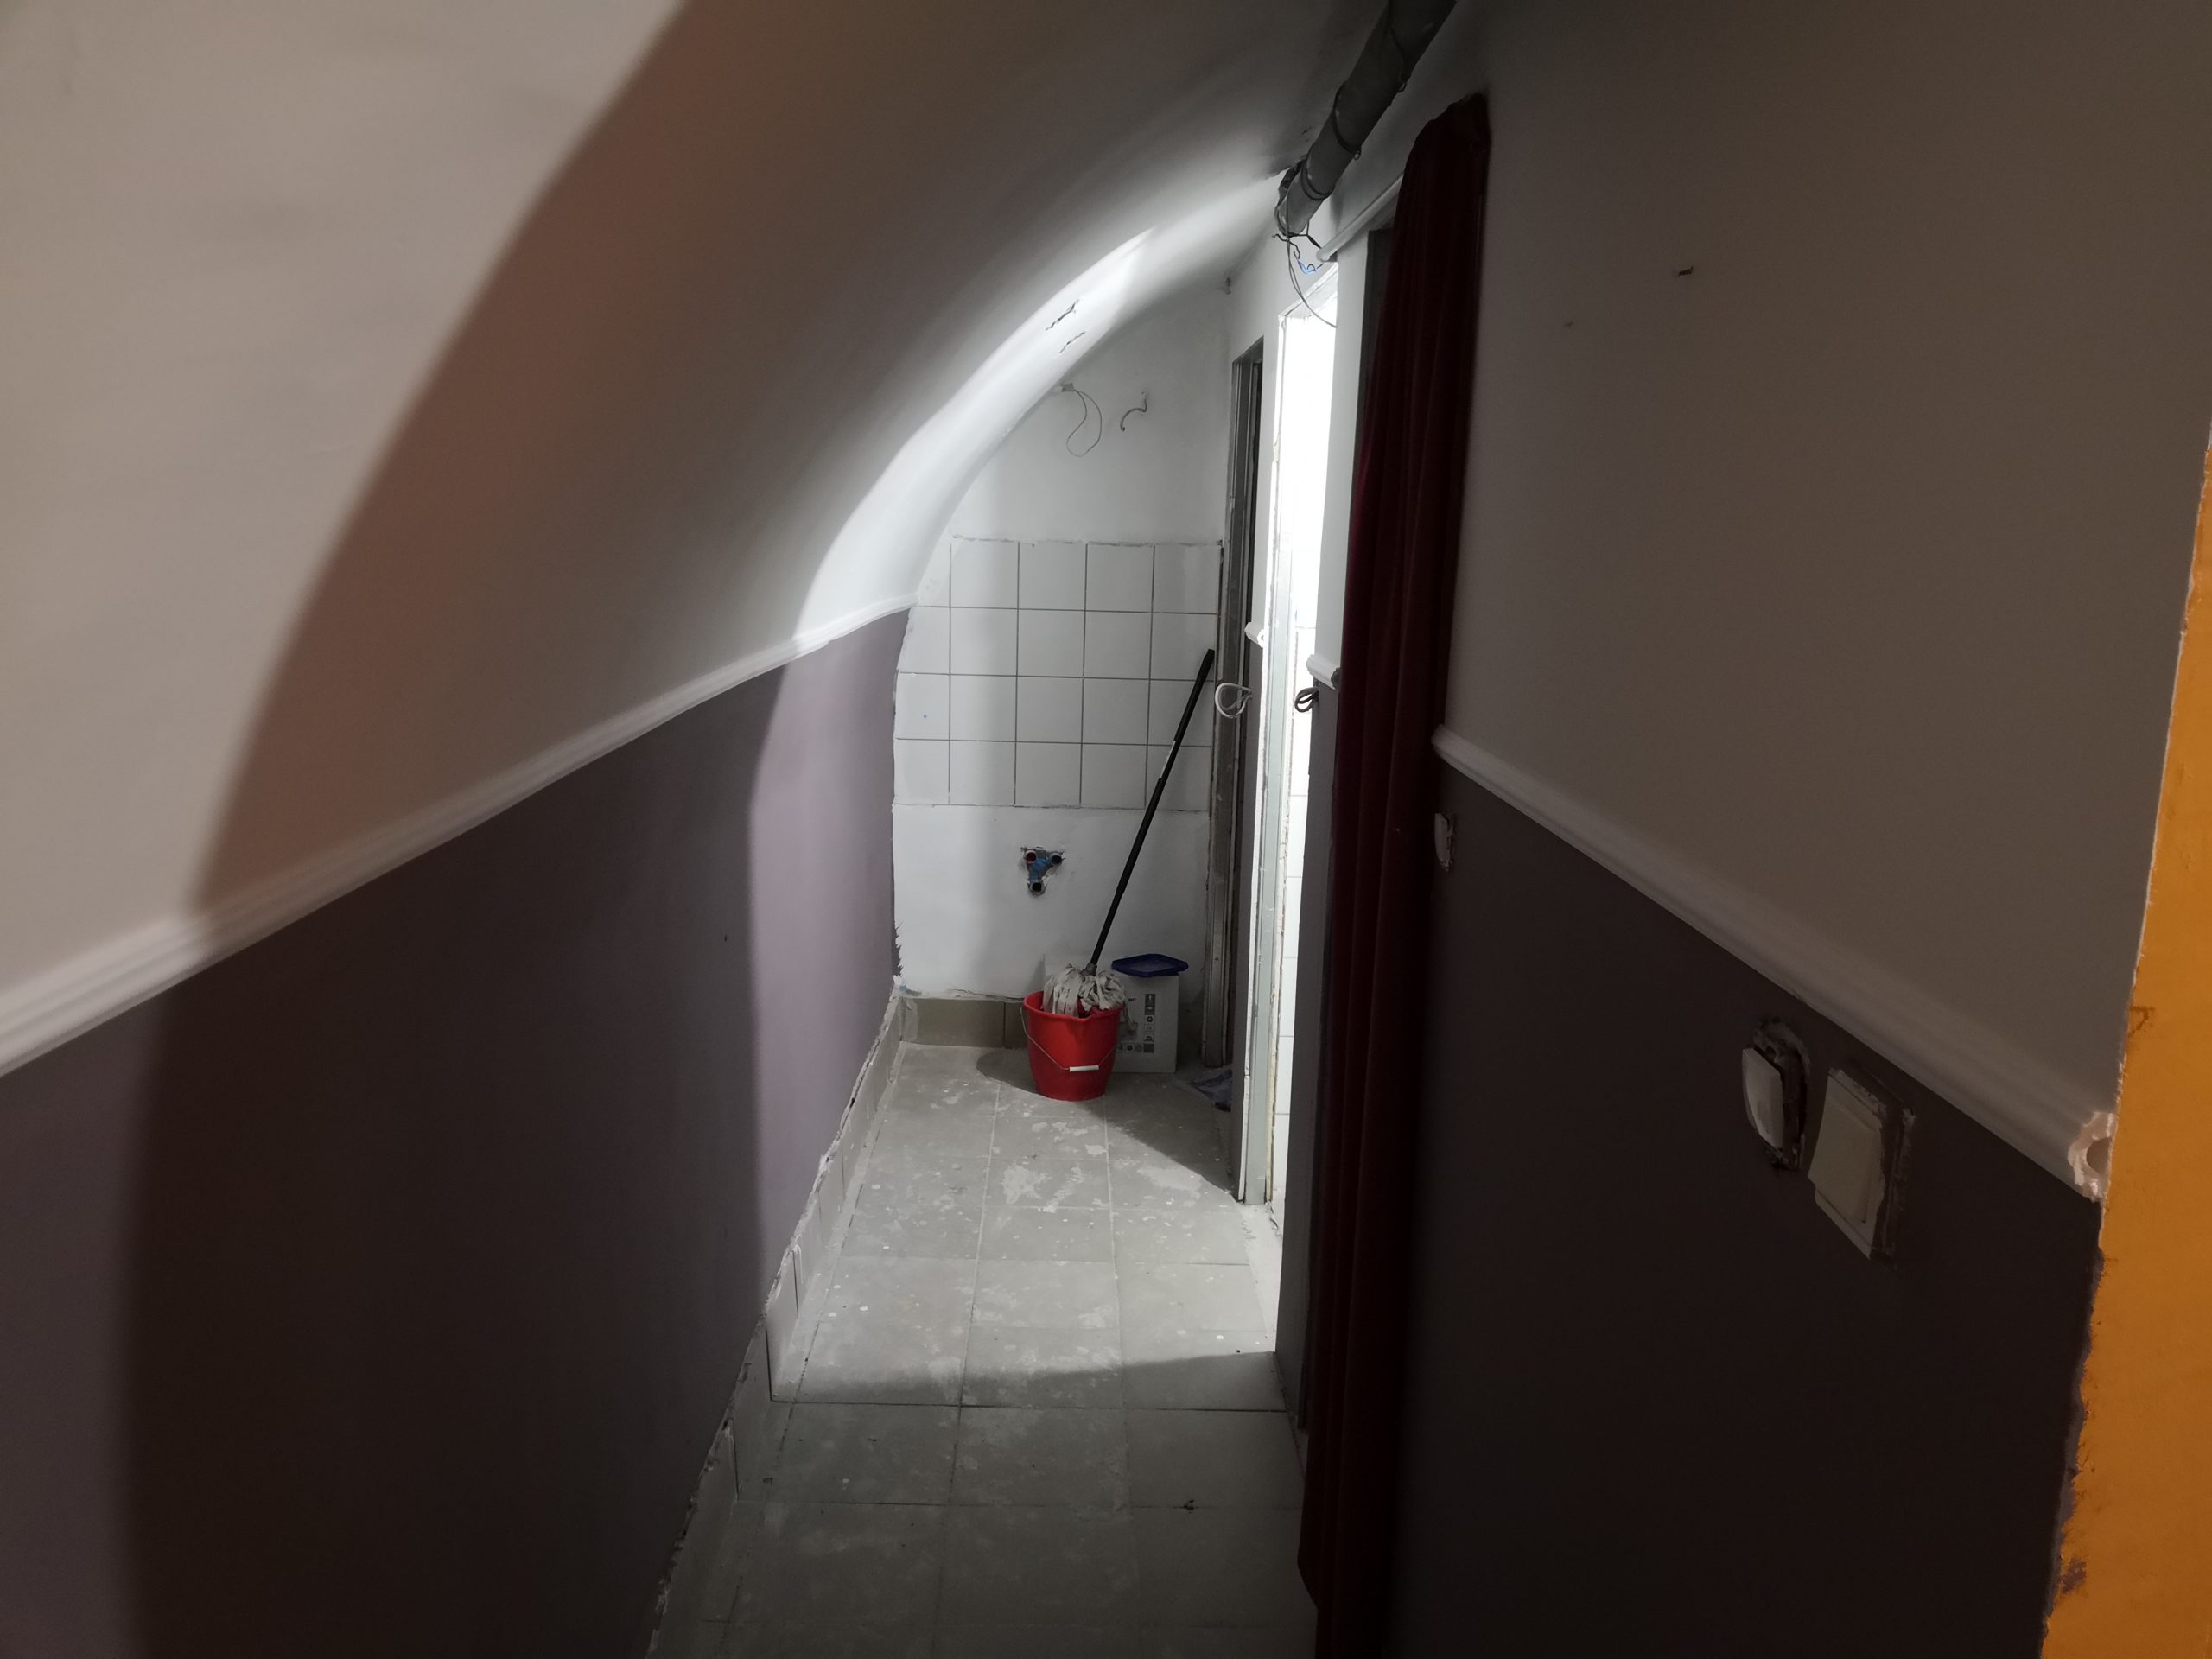 Folyosó a vizesblokkhoz szemben a zuhanyzó